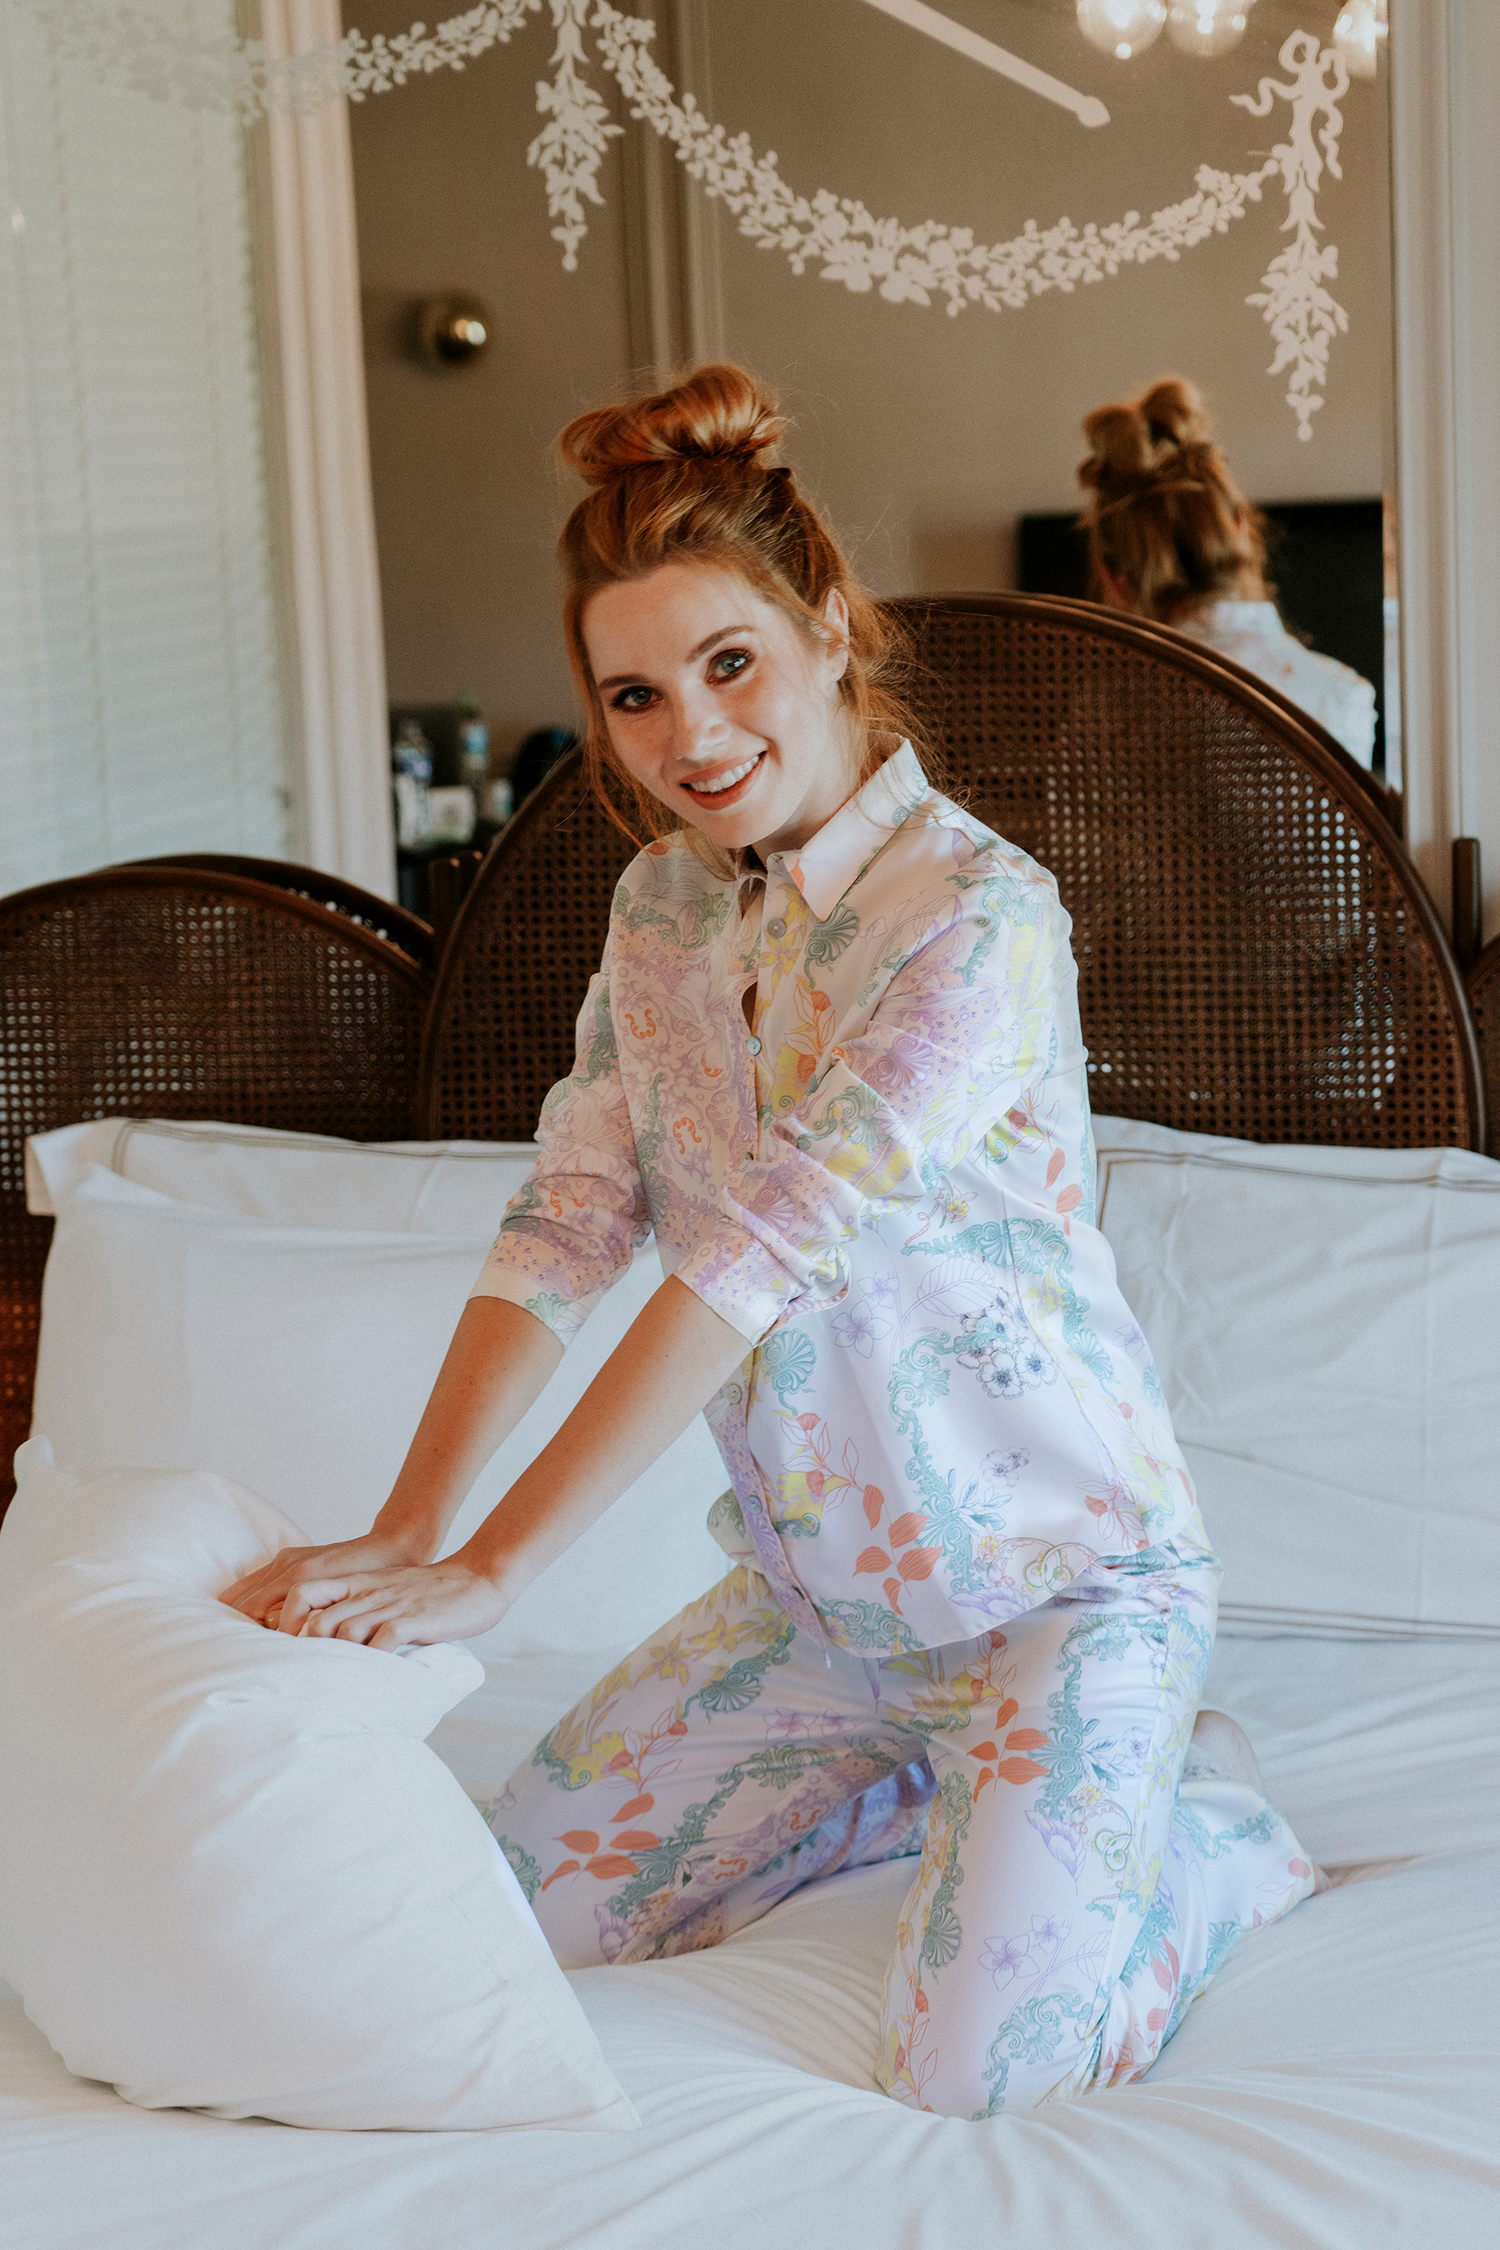 Four Seasons Patch Klasik Pijama Takımı